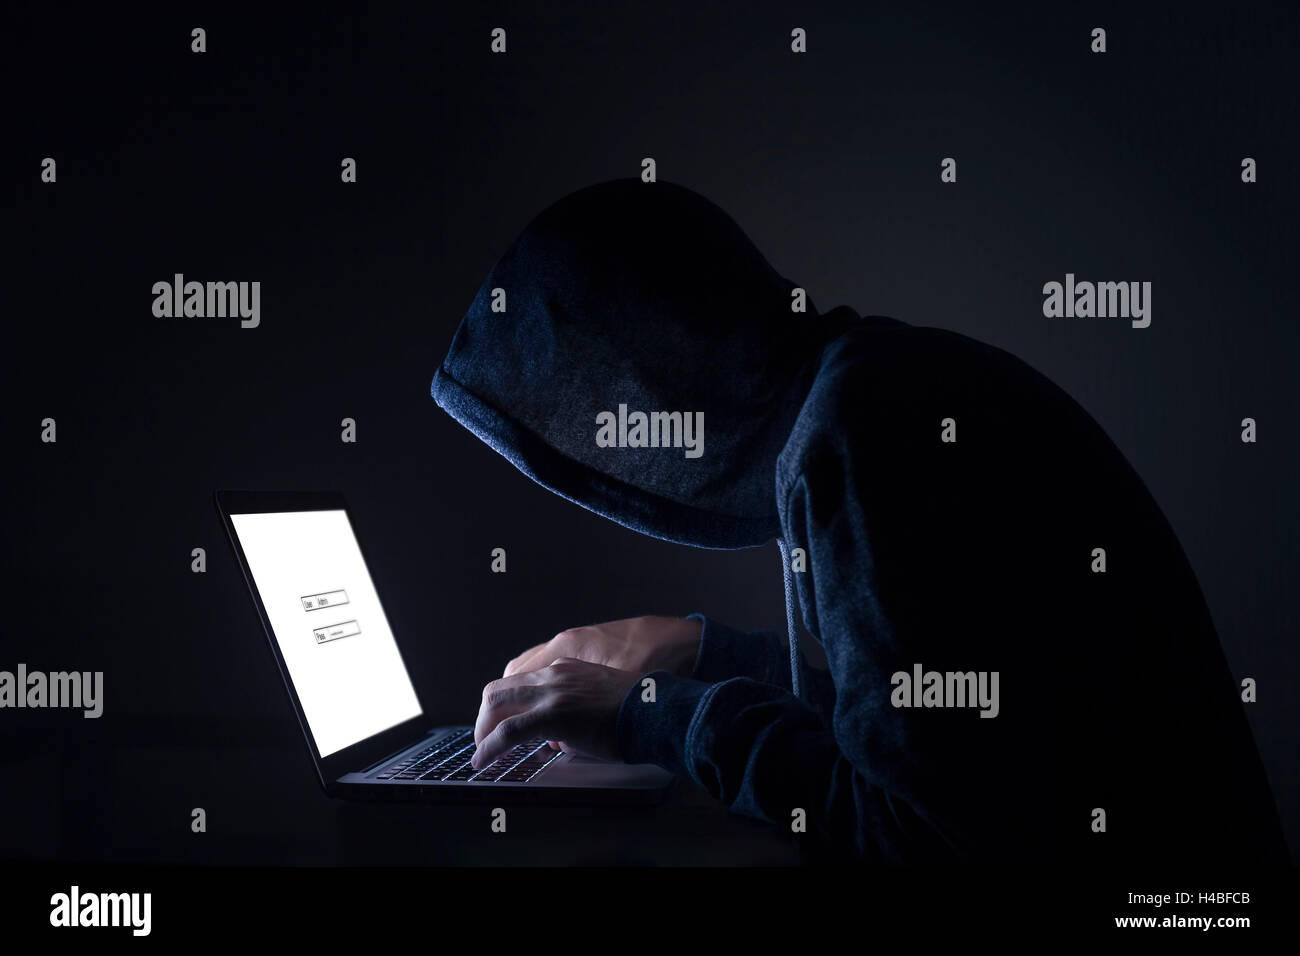 Hacker effectuant une attaque cybernétique on laptop Banque D'Images